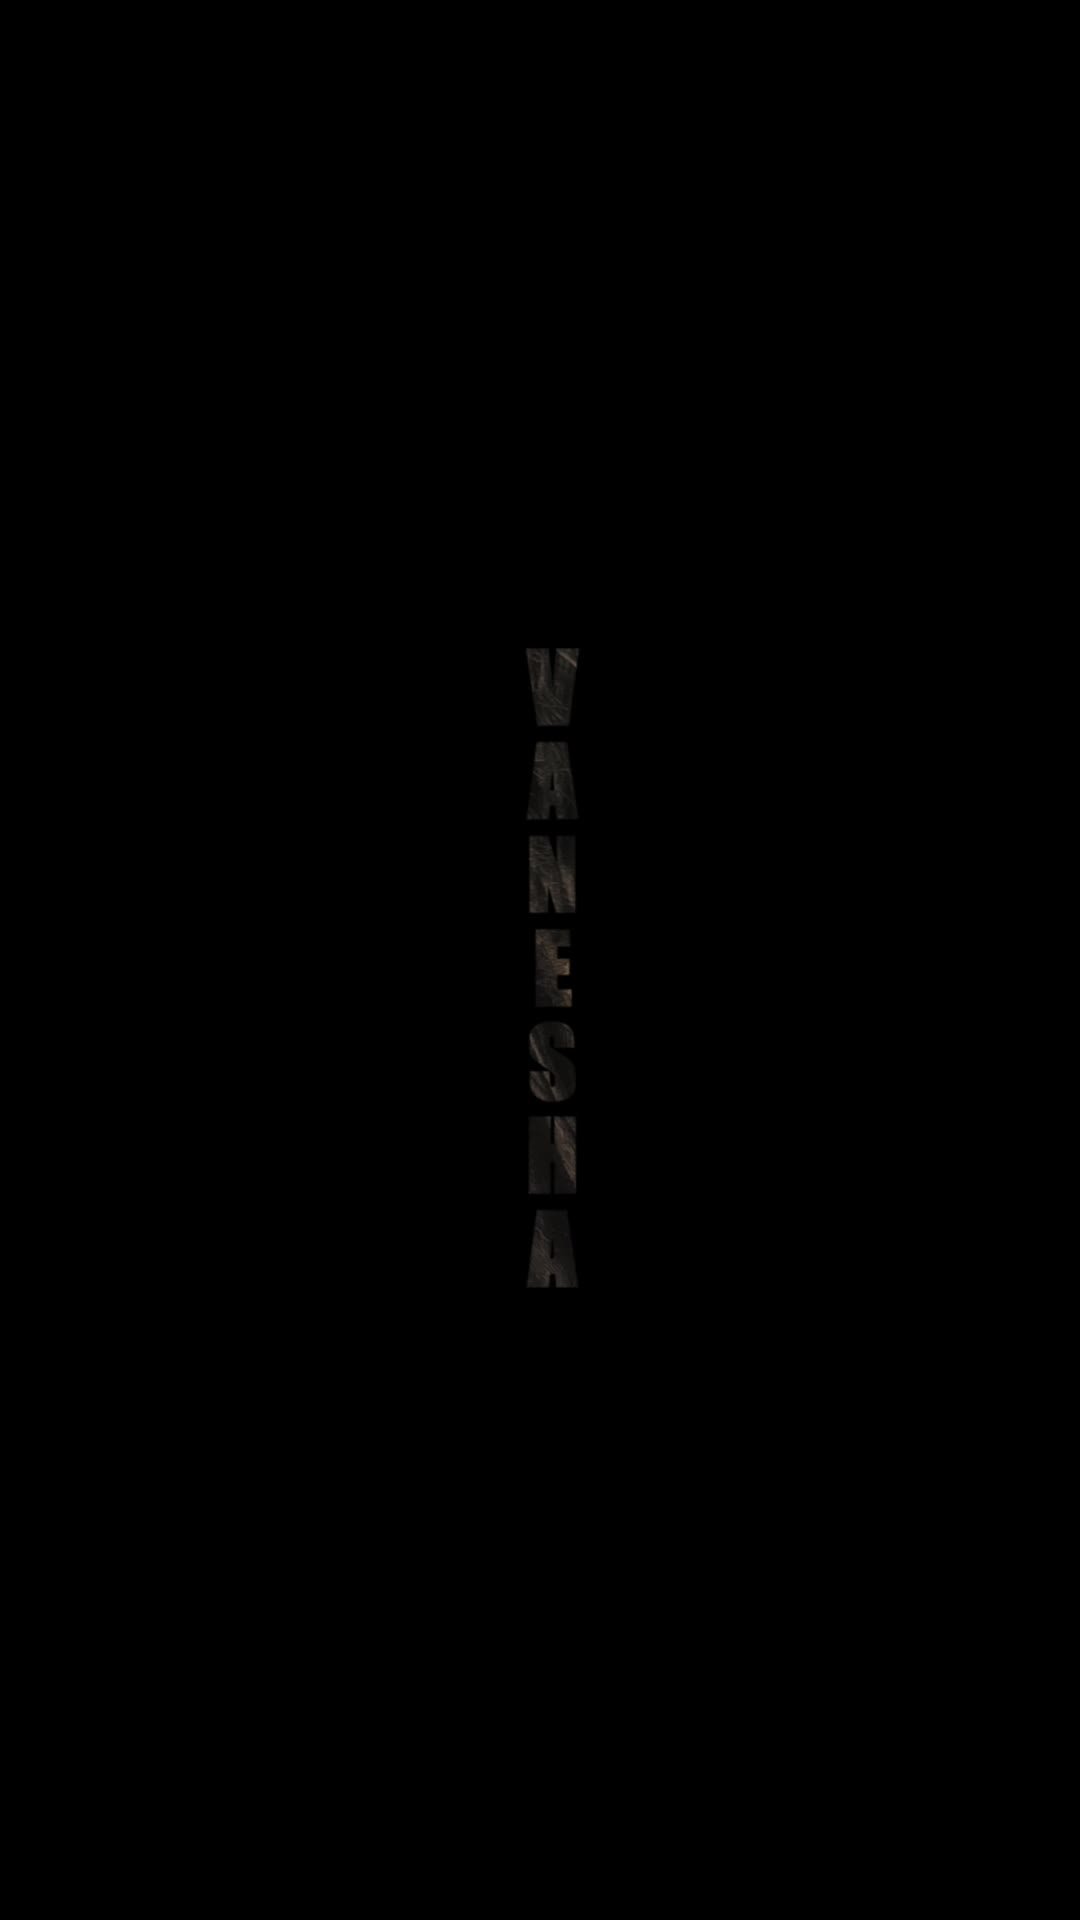 "Vanesha"